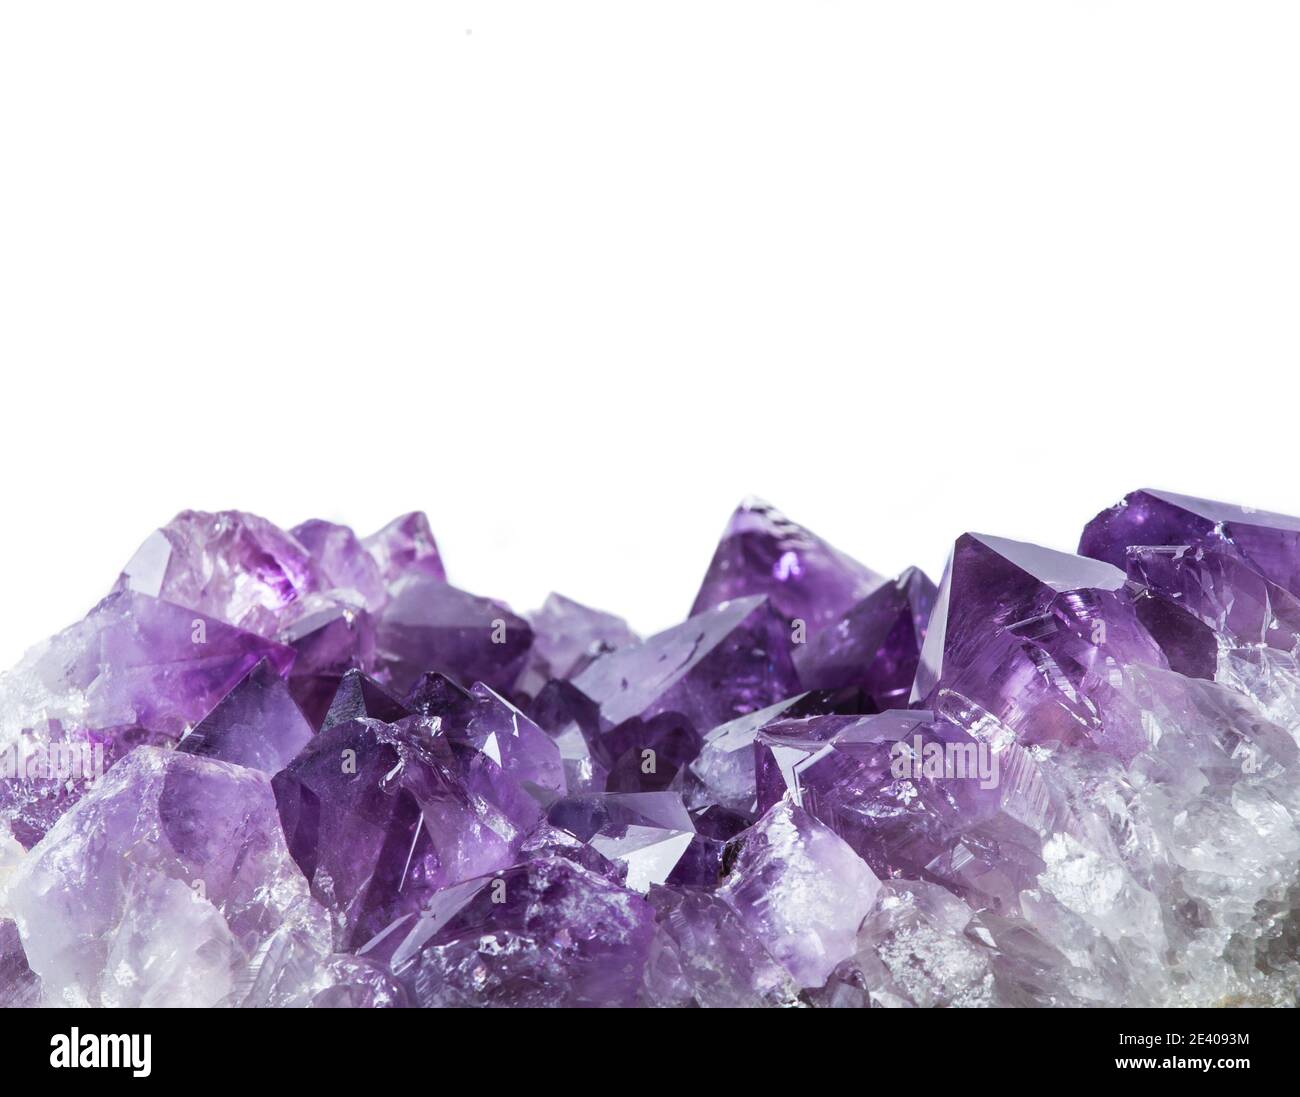 Vue rapprochée de la bordure du grand amas de cristaux d'améthyste violet isolée sur fond blanc. Concept d'arrière-plan magique ésotérique. Banque D'Images